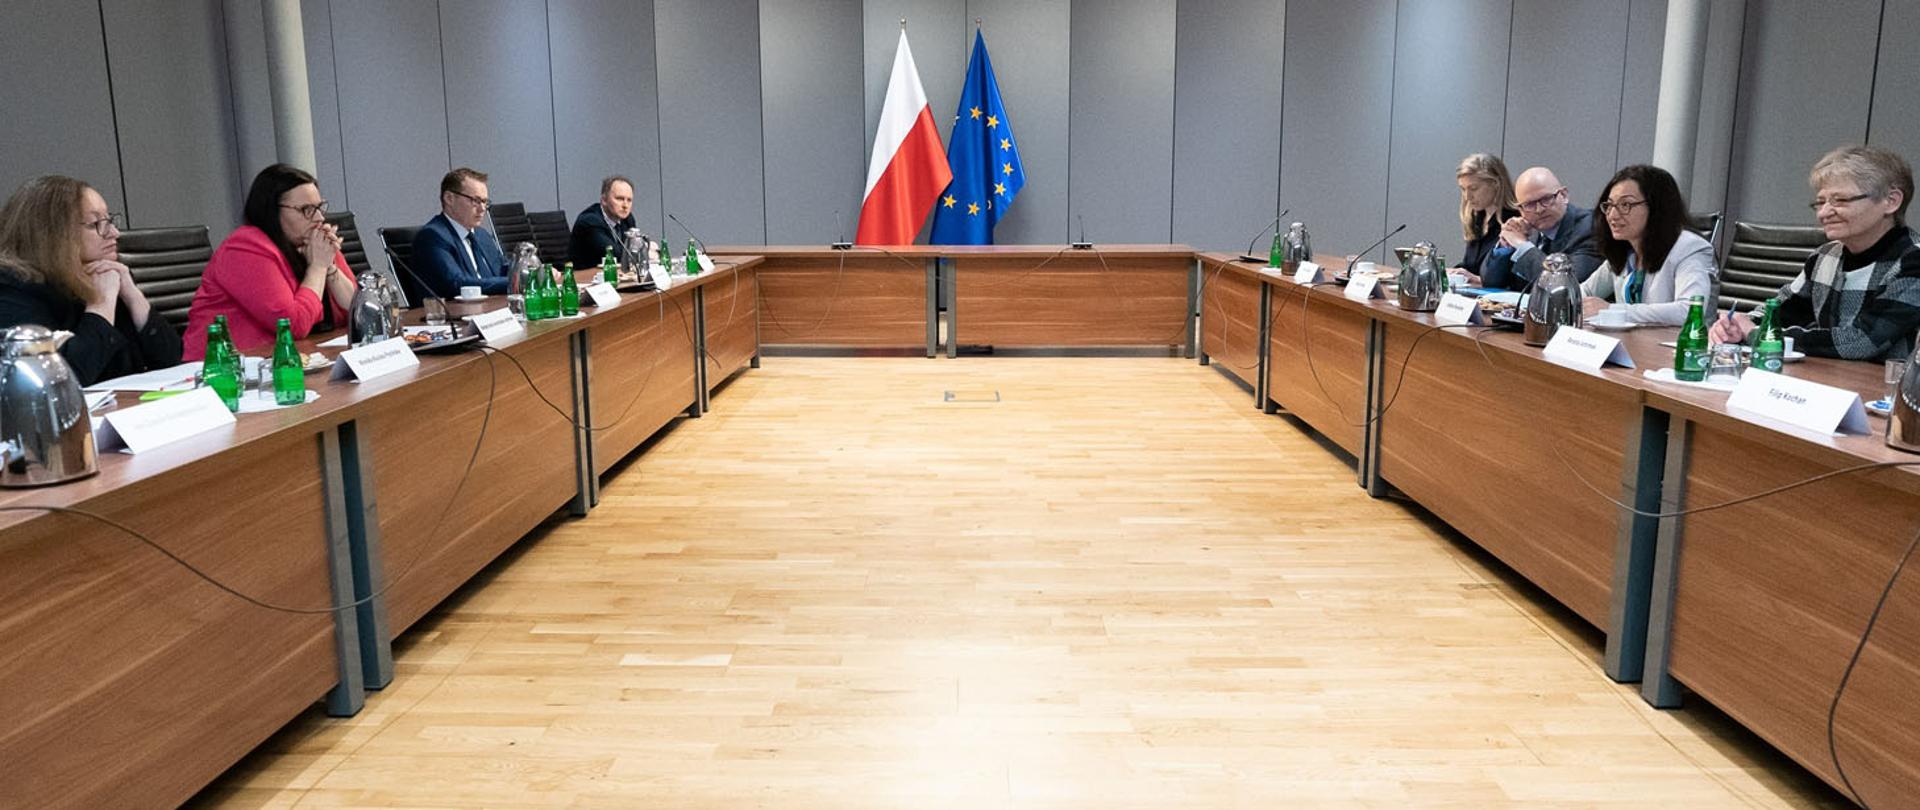 W sali konferencyjnej grupa osób siedzi przy stołach ustawionych w podkowę. Przy ścianie dwie flagi PL i UE.